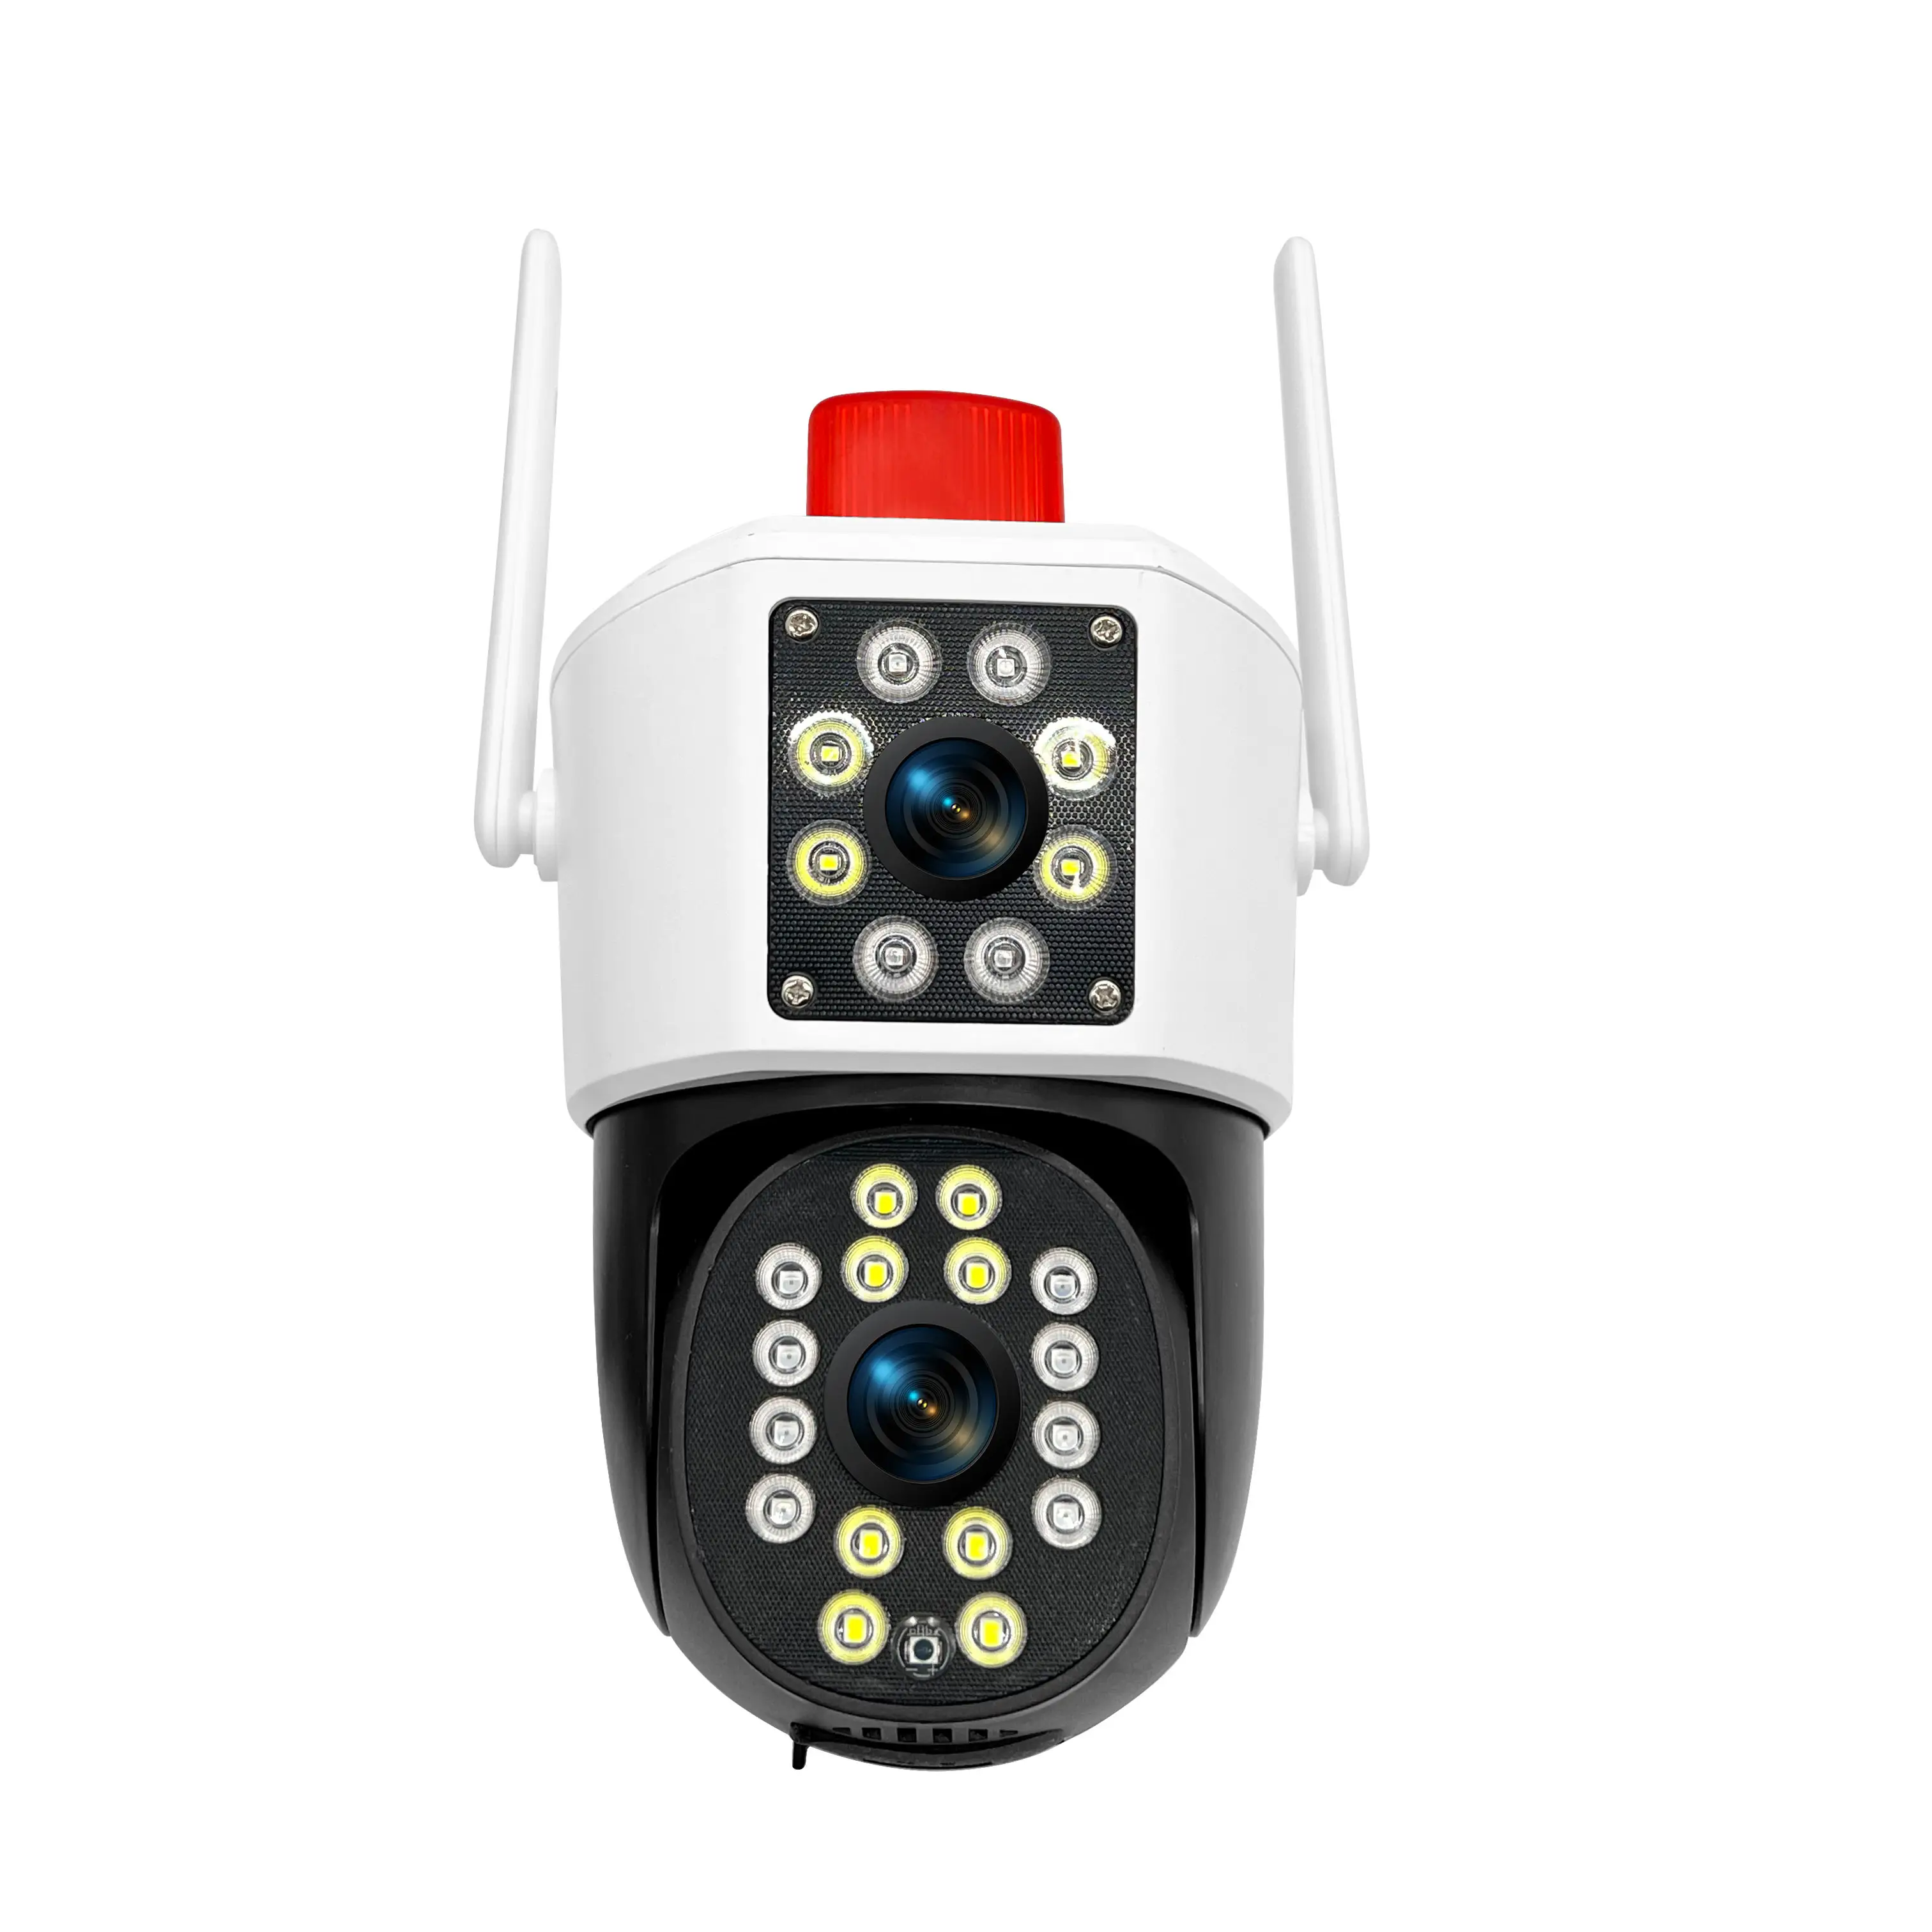 공장 도매 신상품 자동 추적 다채로운 야간 투시경 홈 보안 시스템 IP 카메라 듀얼 렌즈 PTZ 카메라 936